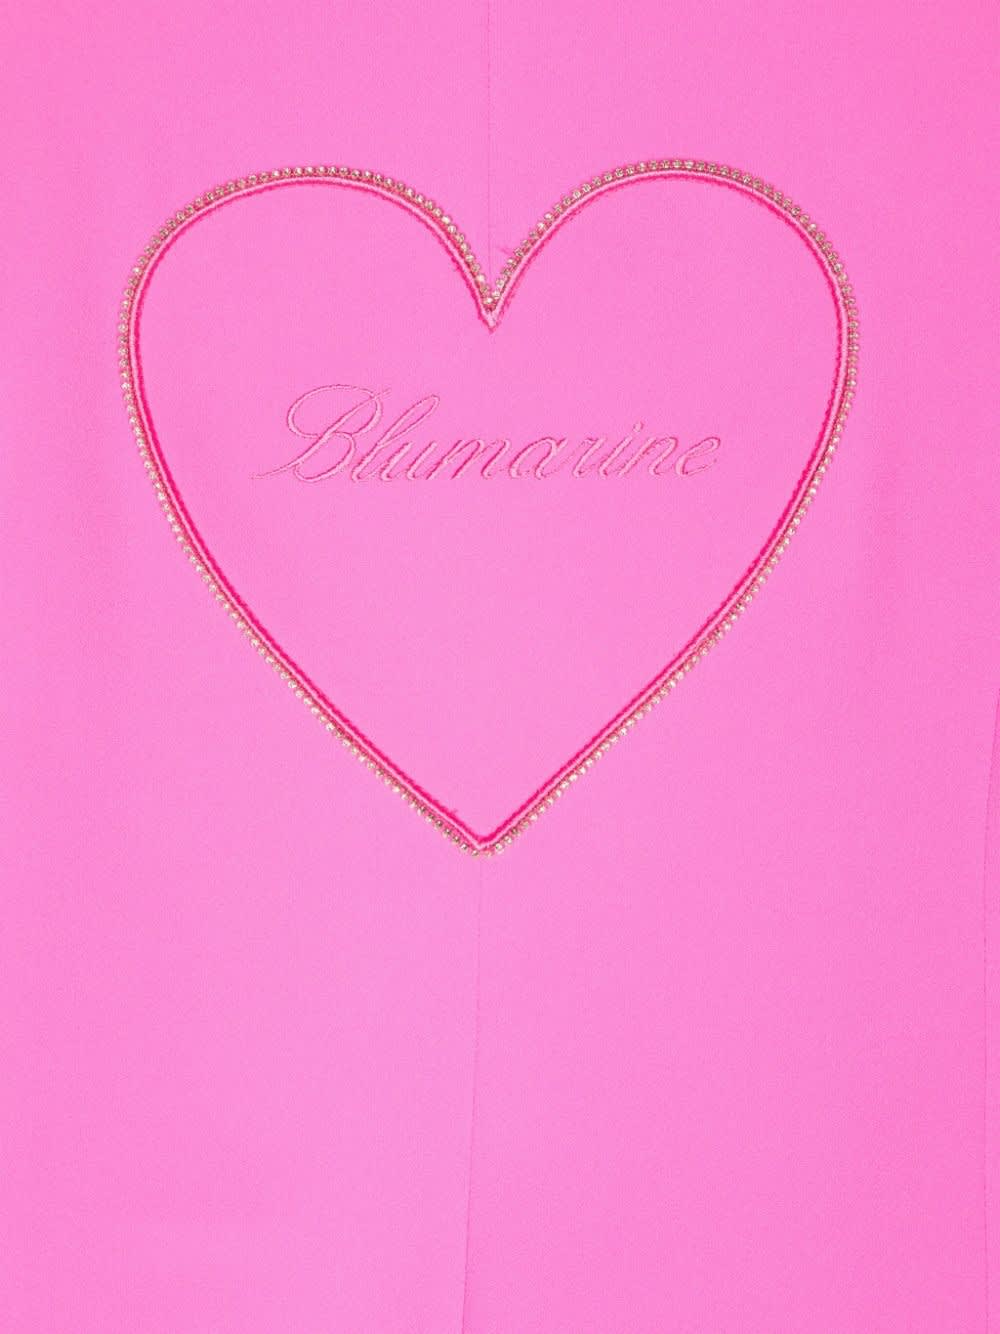 Shop Miss Blumarine Blazer Monopetto In Pink